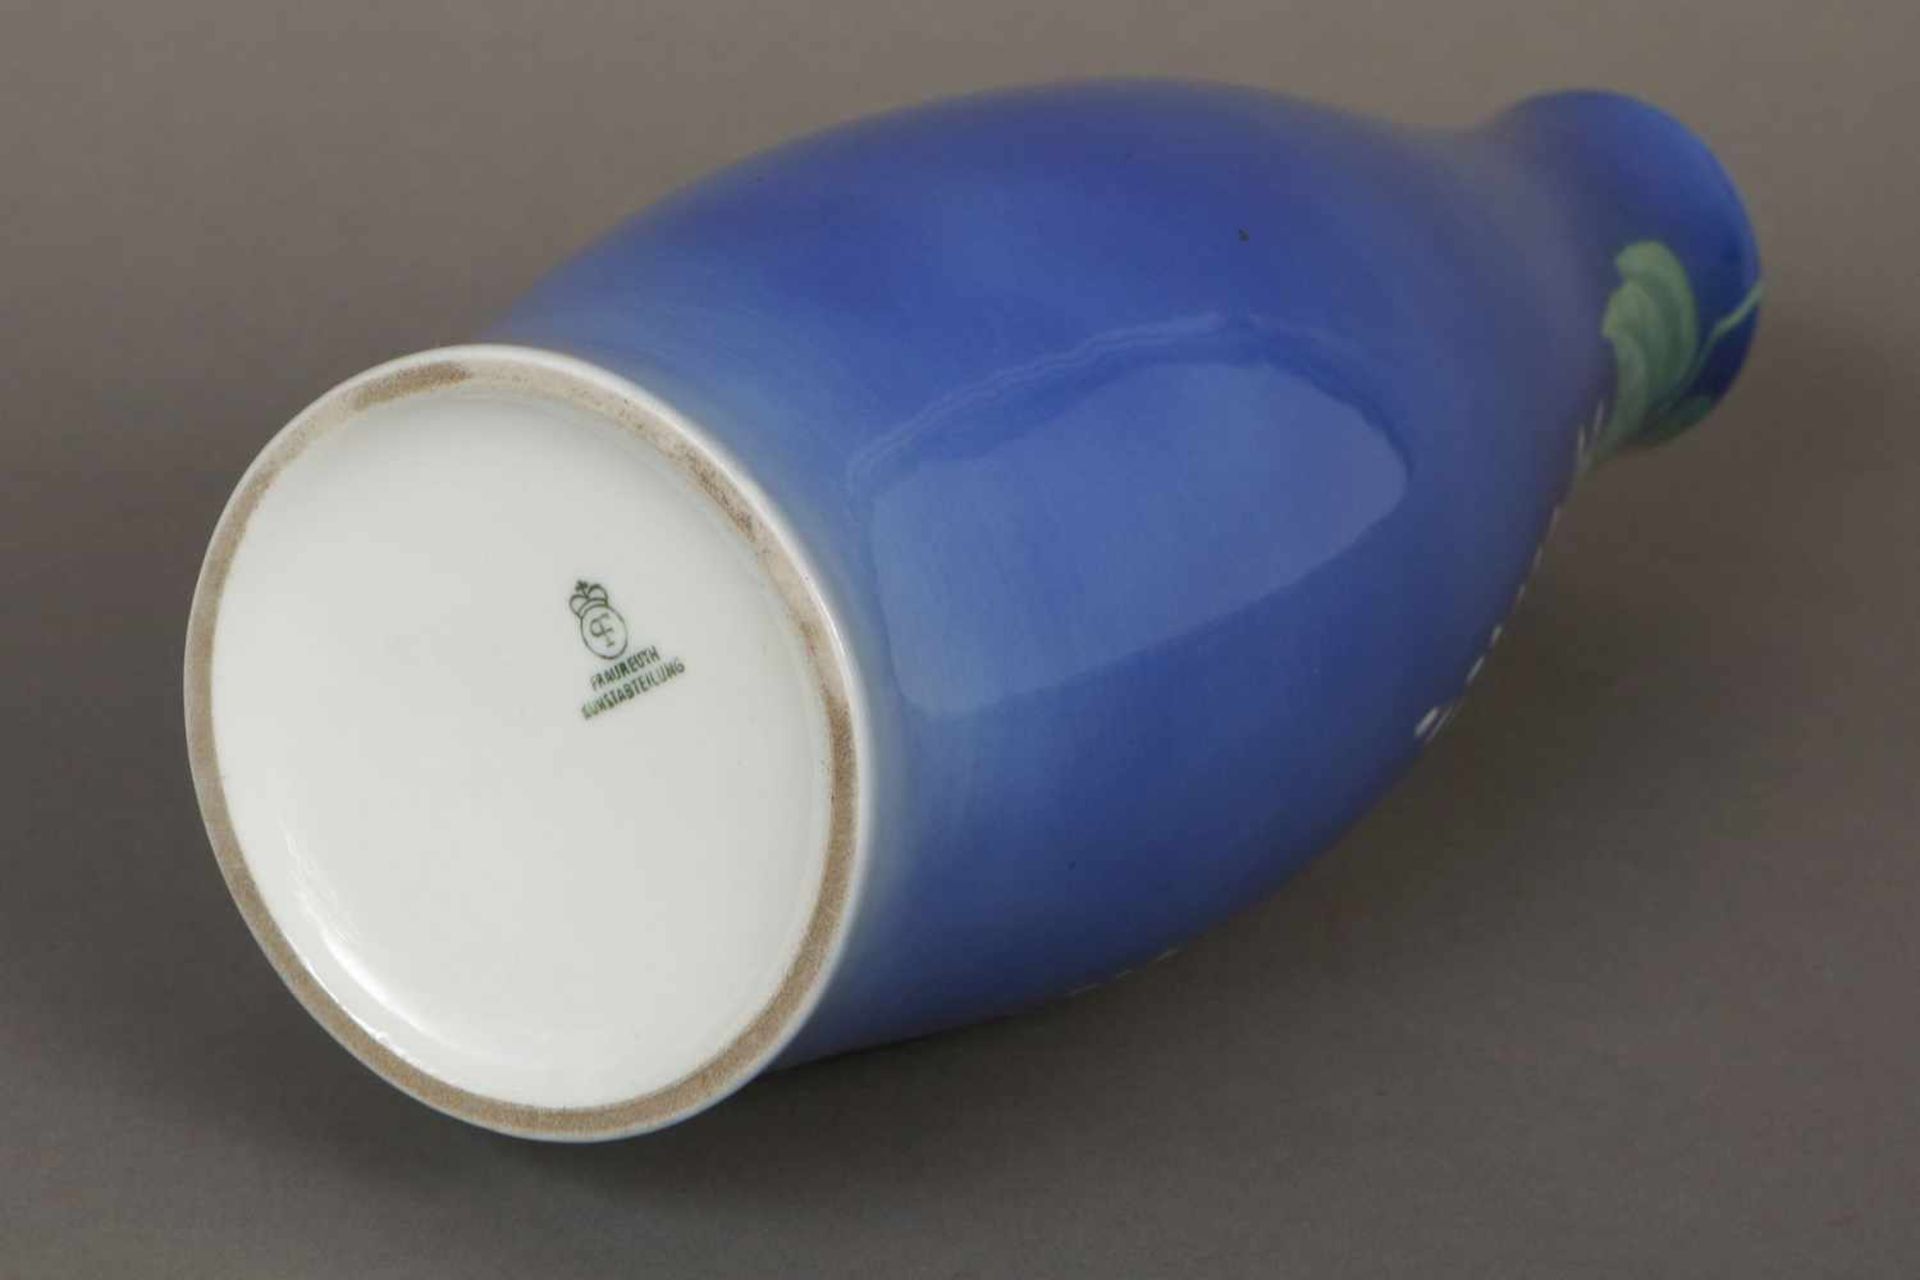 FRAUREUTH (Kunstabteilung) VasePorzellan, blau glasiert, um 1920, keulenförmiger Korpus, schauseitig - Image 2 of 2